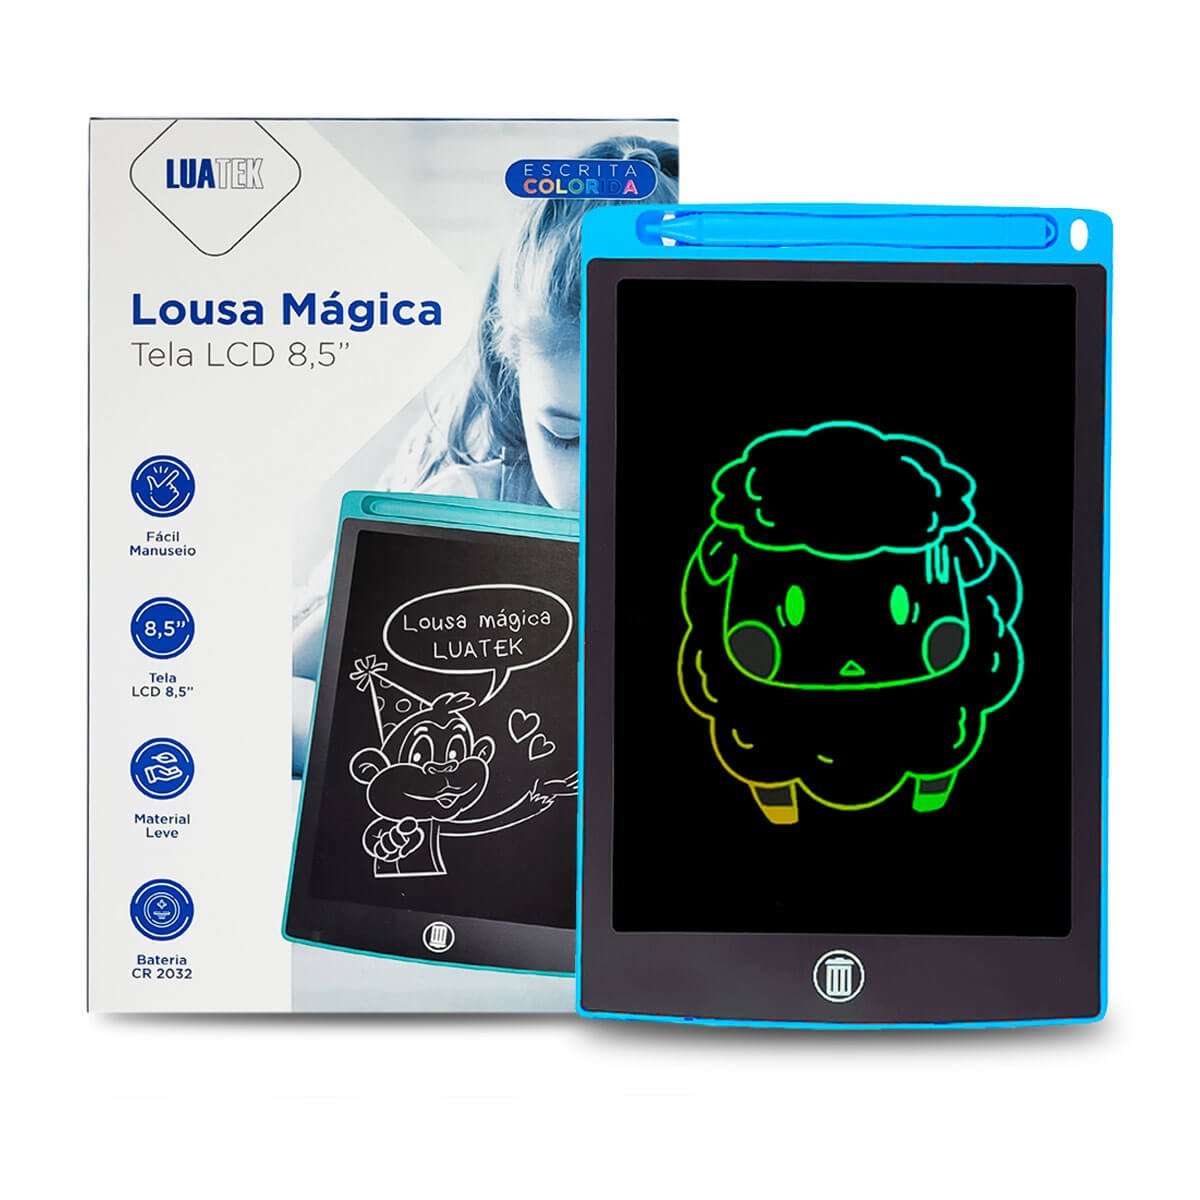 Lousa Digital Lcd Tablet para Escrever e Desenhos Colorida Luatek - 2